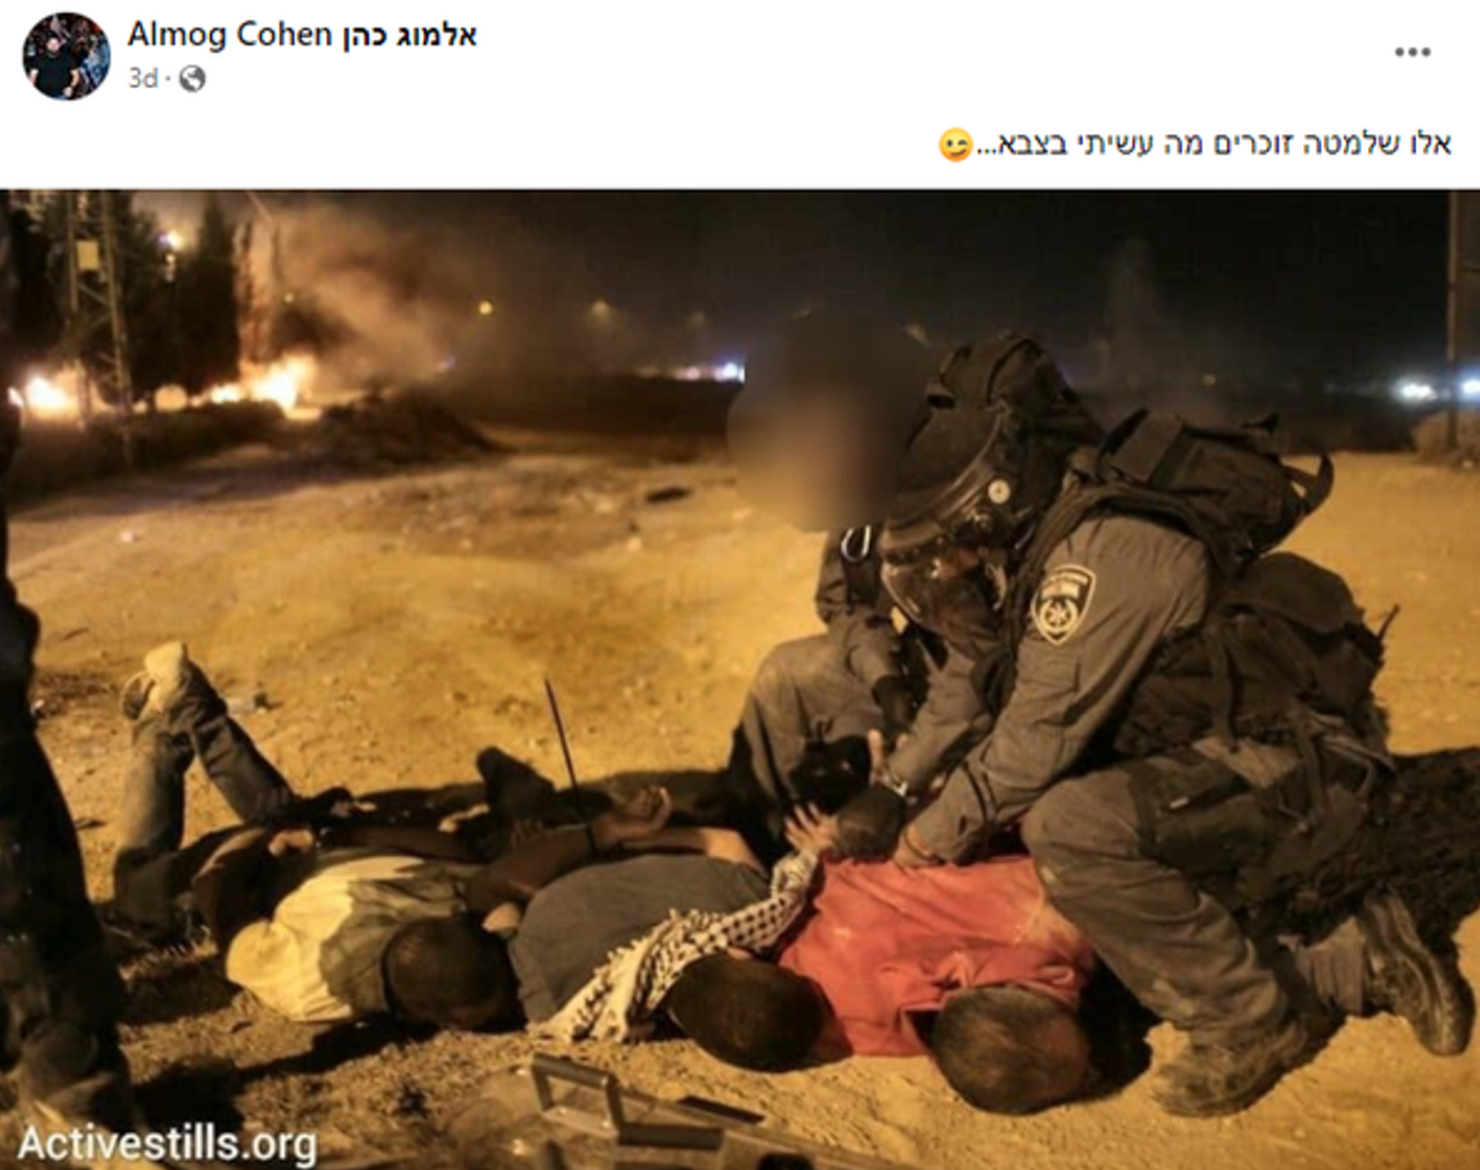 صورة توثق اعتداء ألموغ كوهين على ثلاثة من البدو، ولاحقًا نشر الصورة في منشور على فيسبوك